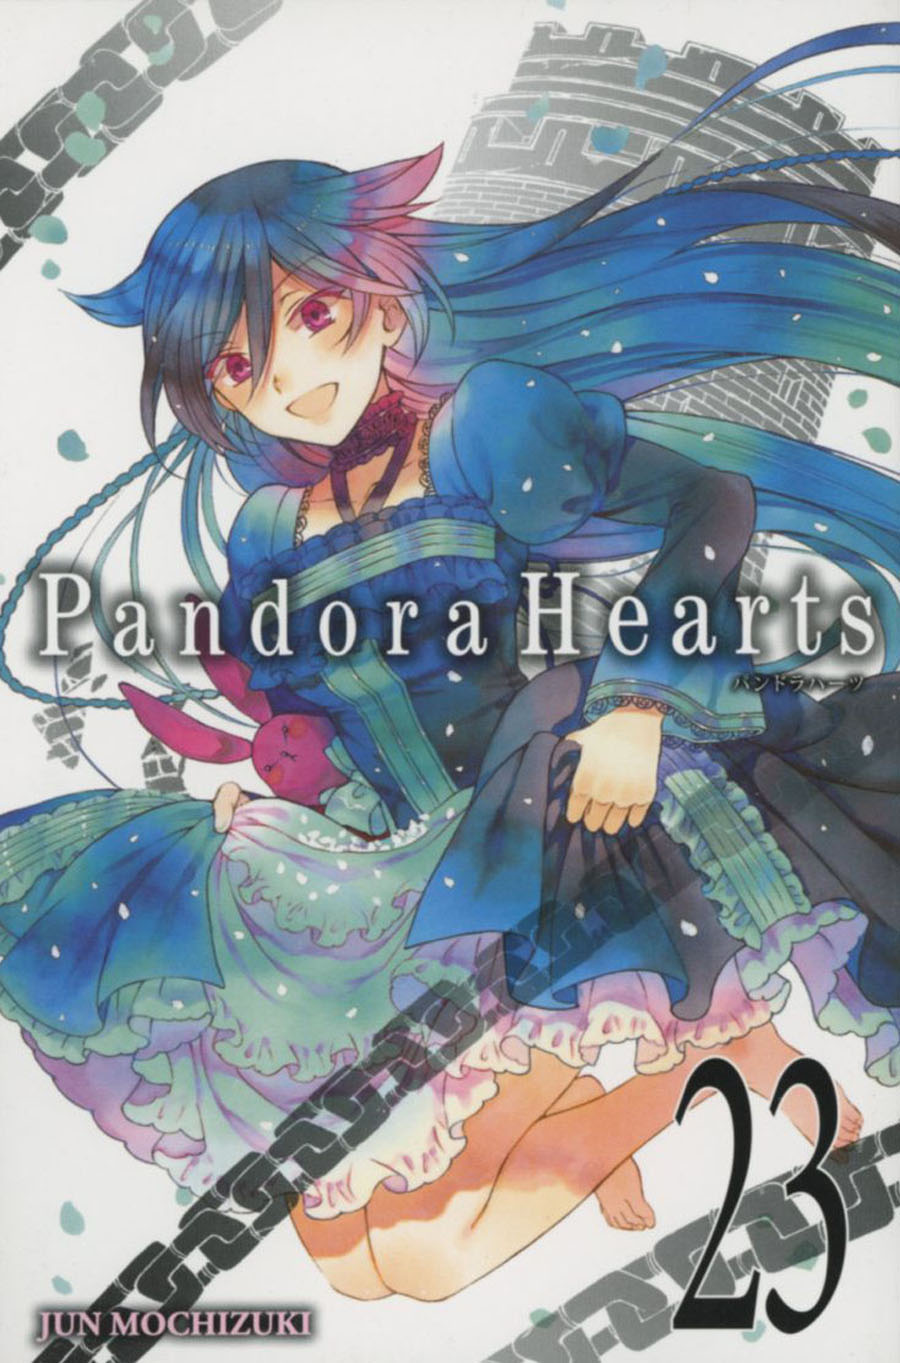 Pandora Hearts Vol 23 GN